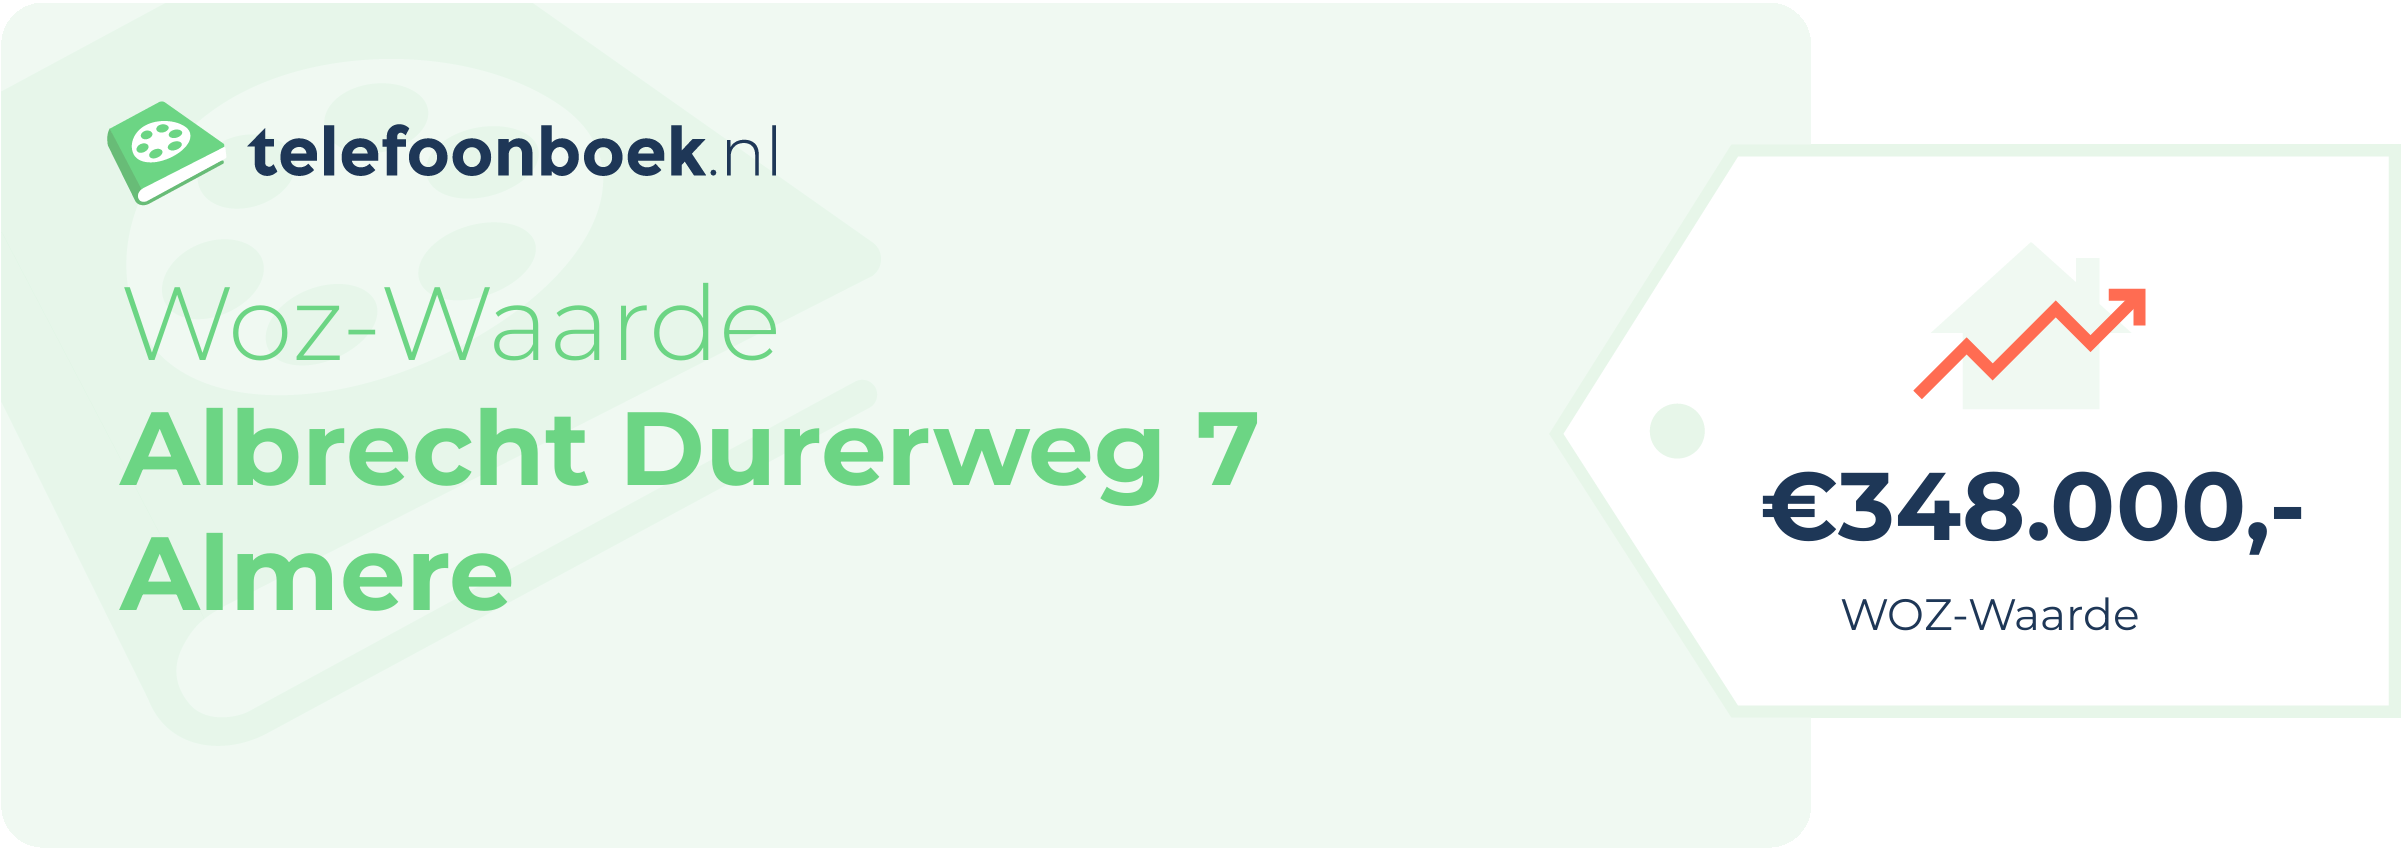 WOZ-waarde Albrecht Durerweg 7 Almere